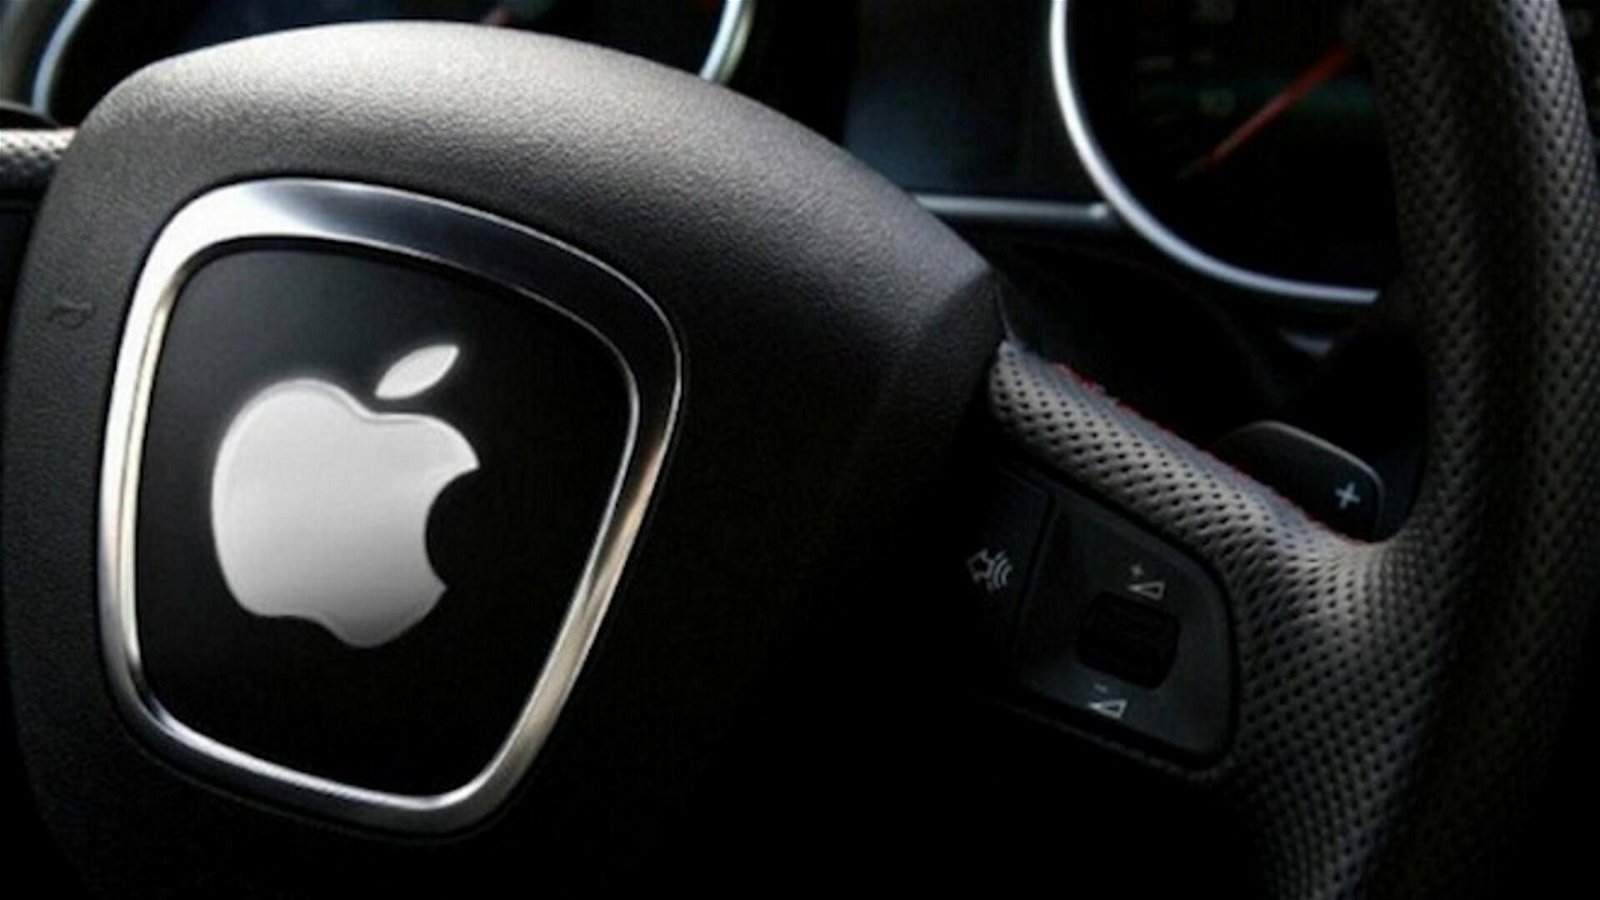 Immagine di Apple iCar, la guida autonoma potrebbe arrivare nel 2025